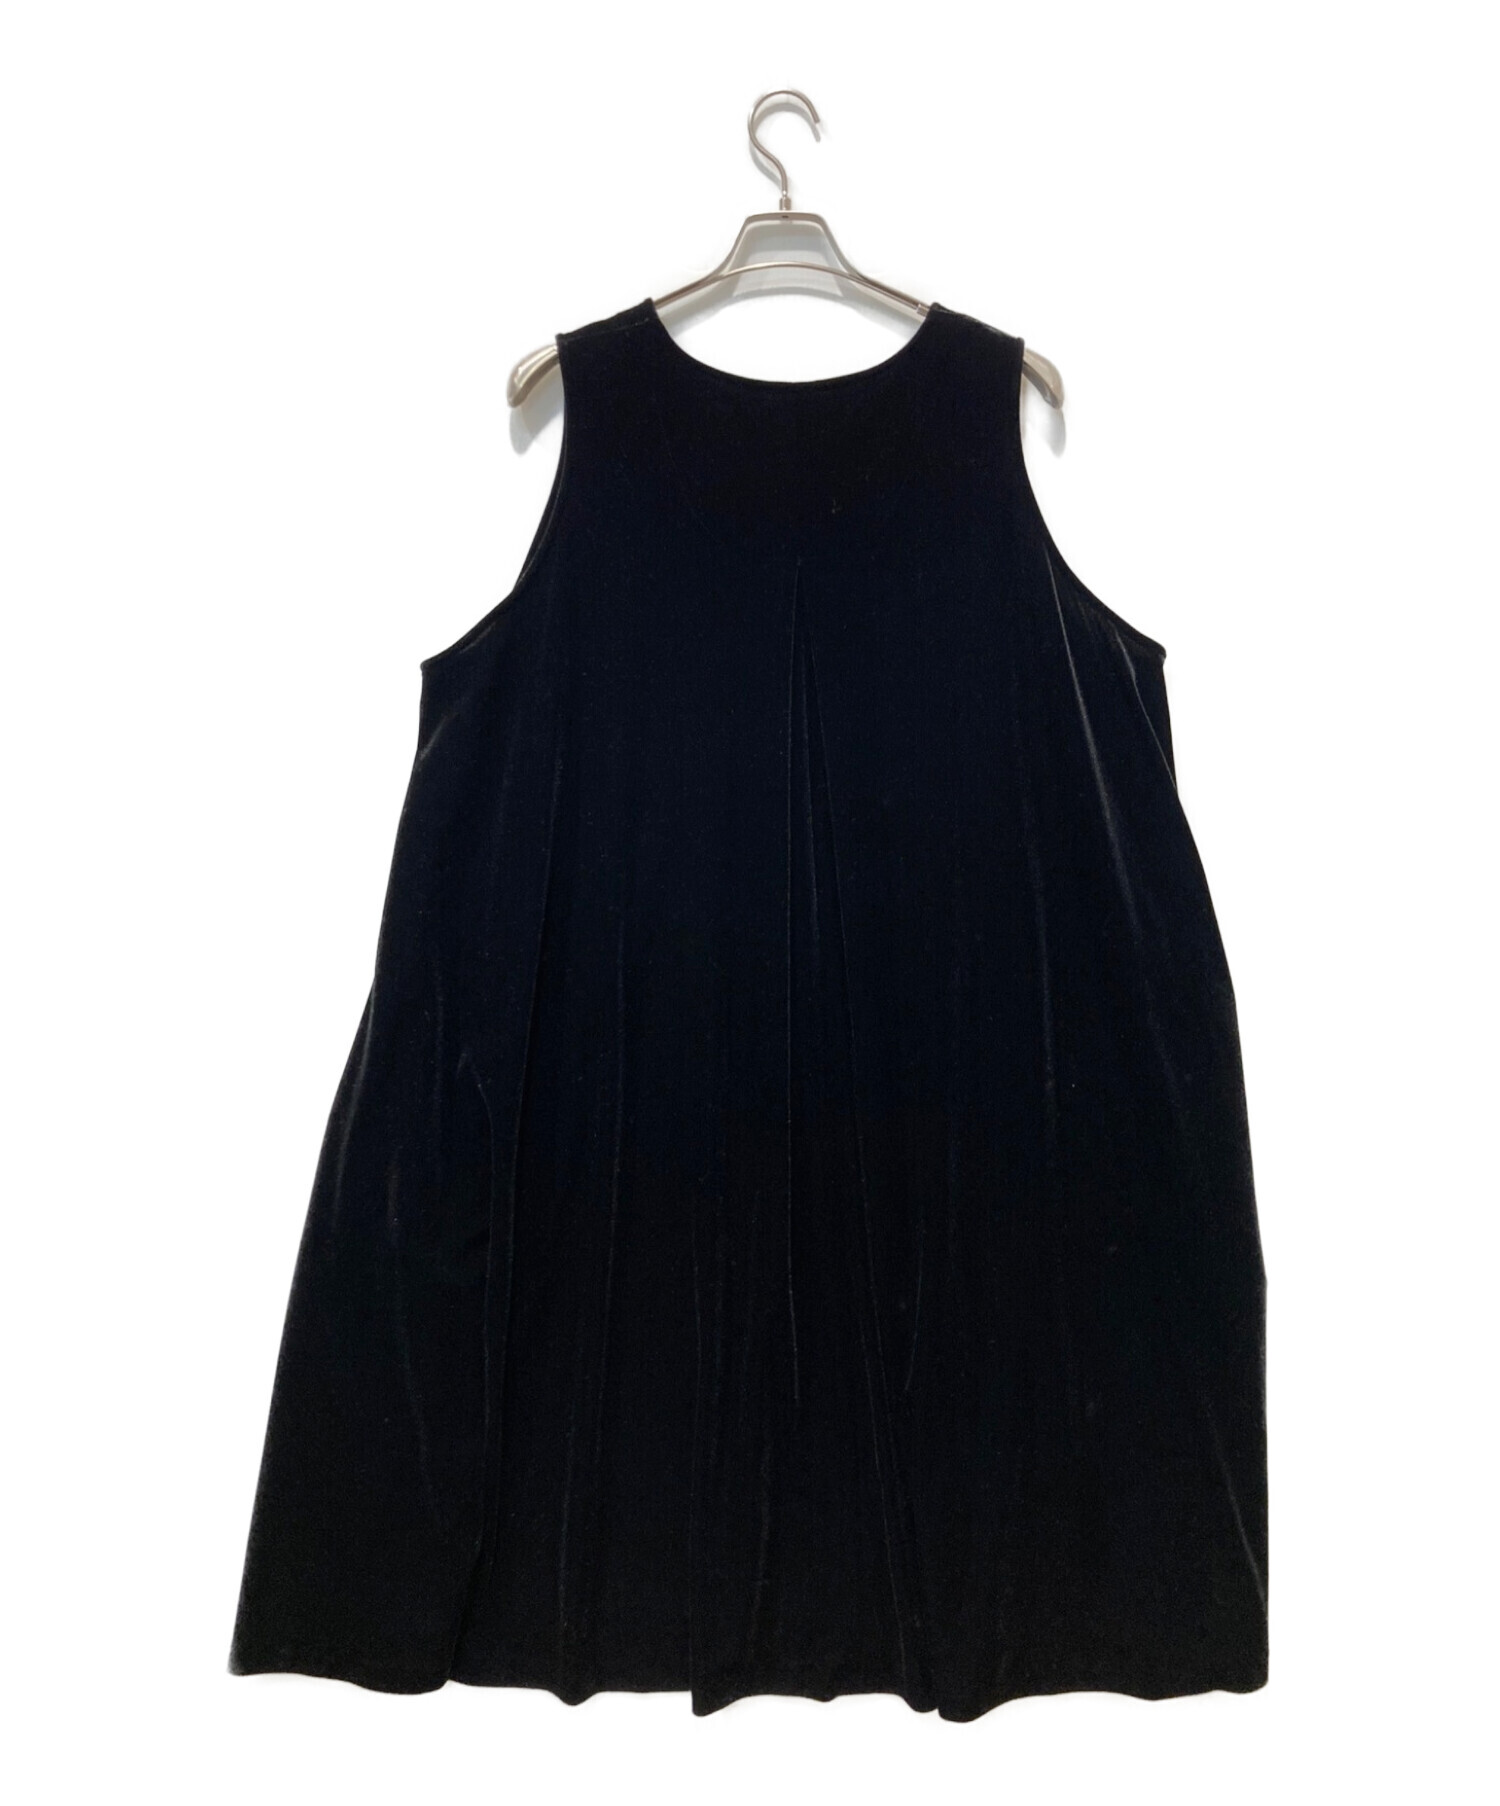 foufou (フーフー) THE DRESS #16ノースリーブベロアワンピース ブラック